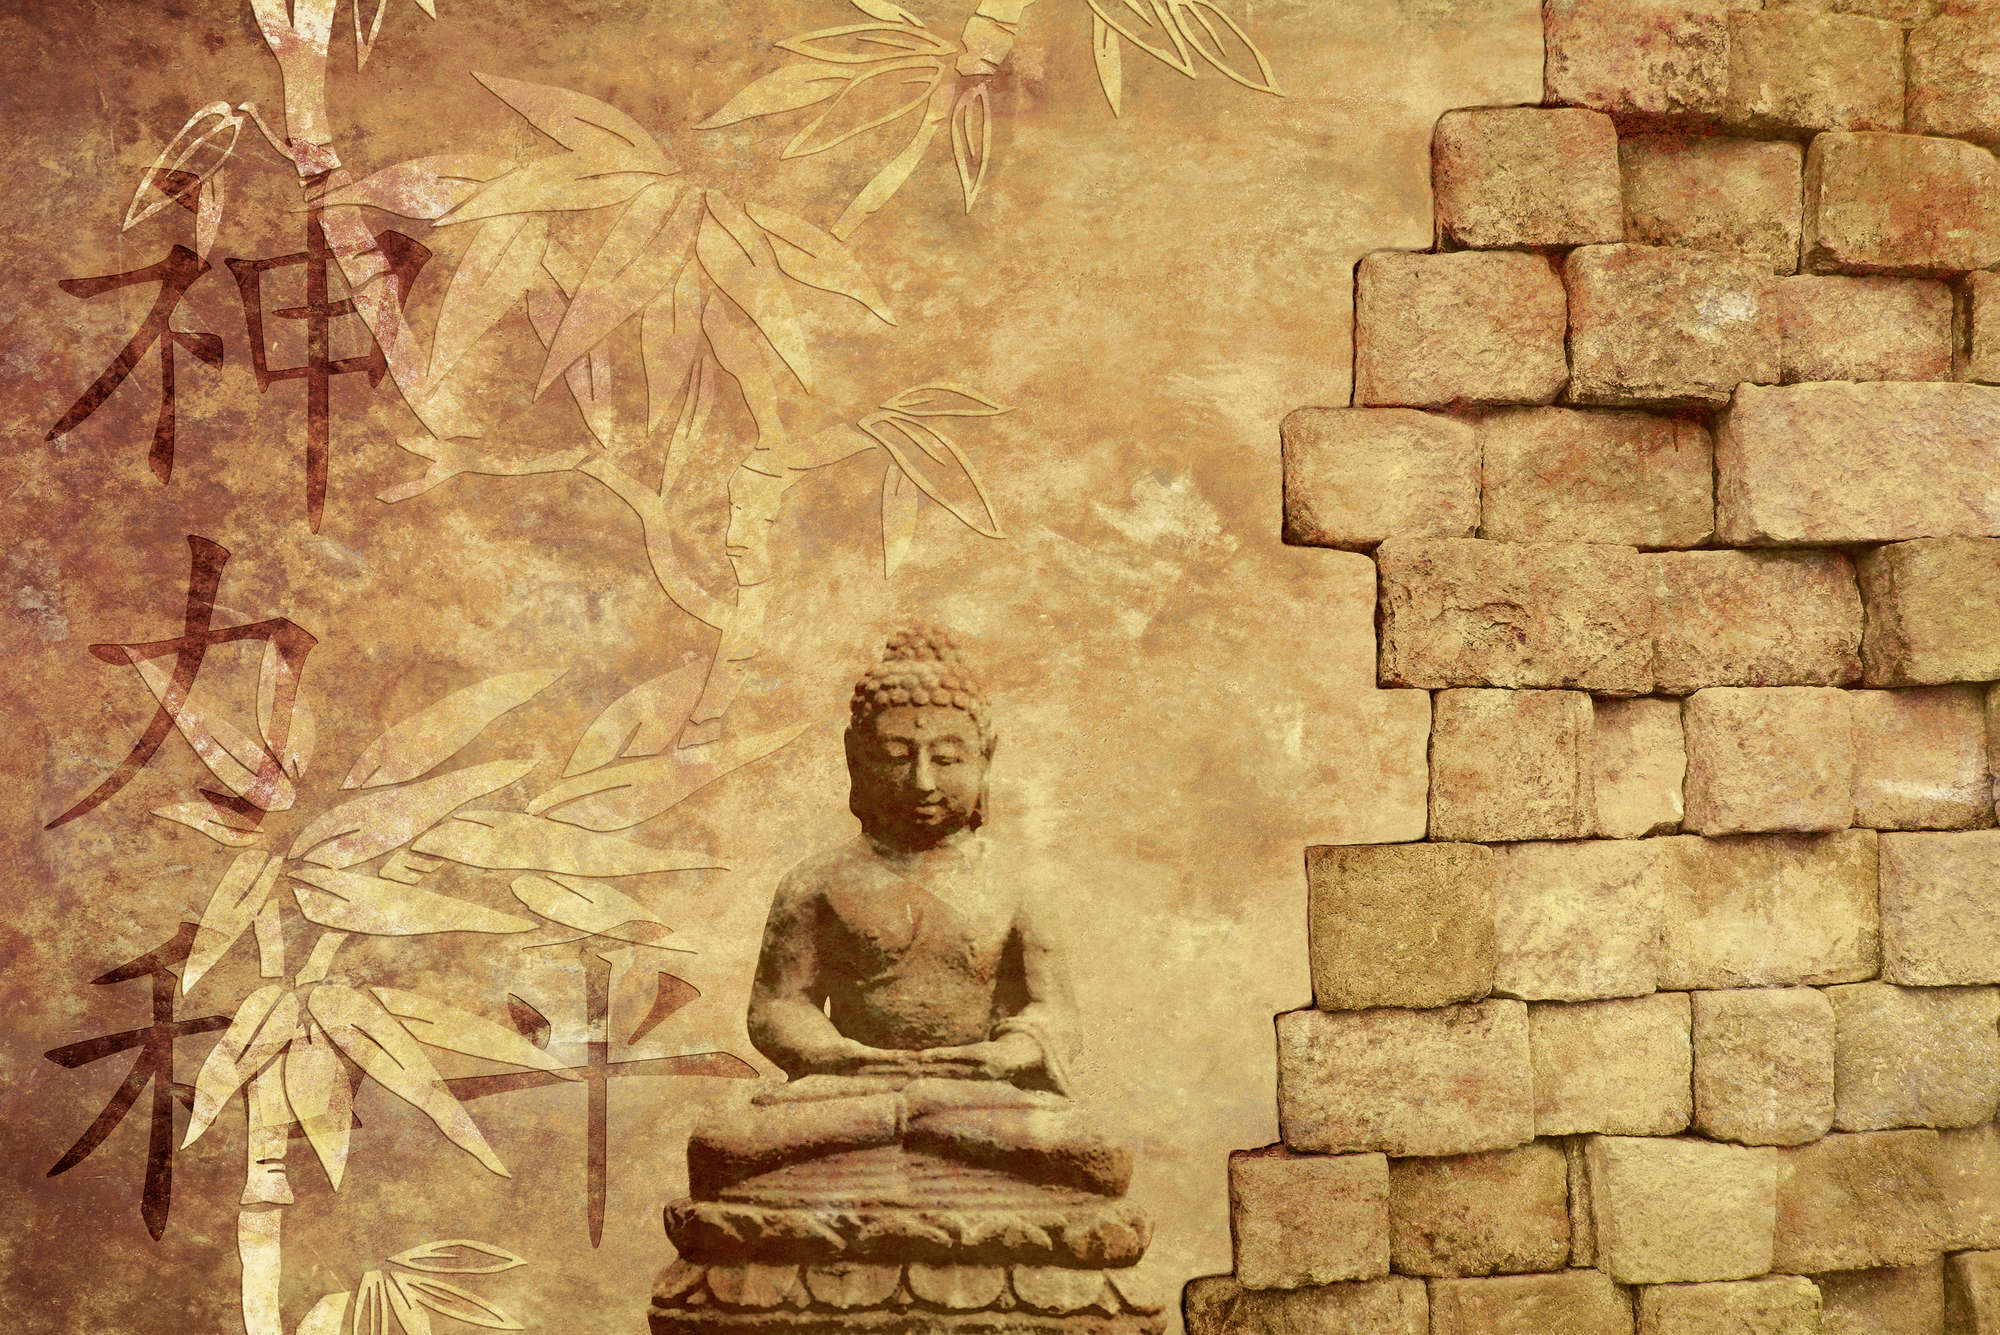             Digital behang met Boeddha figuur - parelmoer glad vlies
        